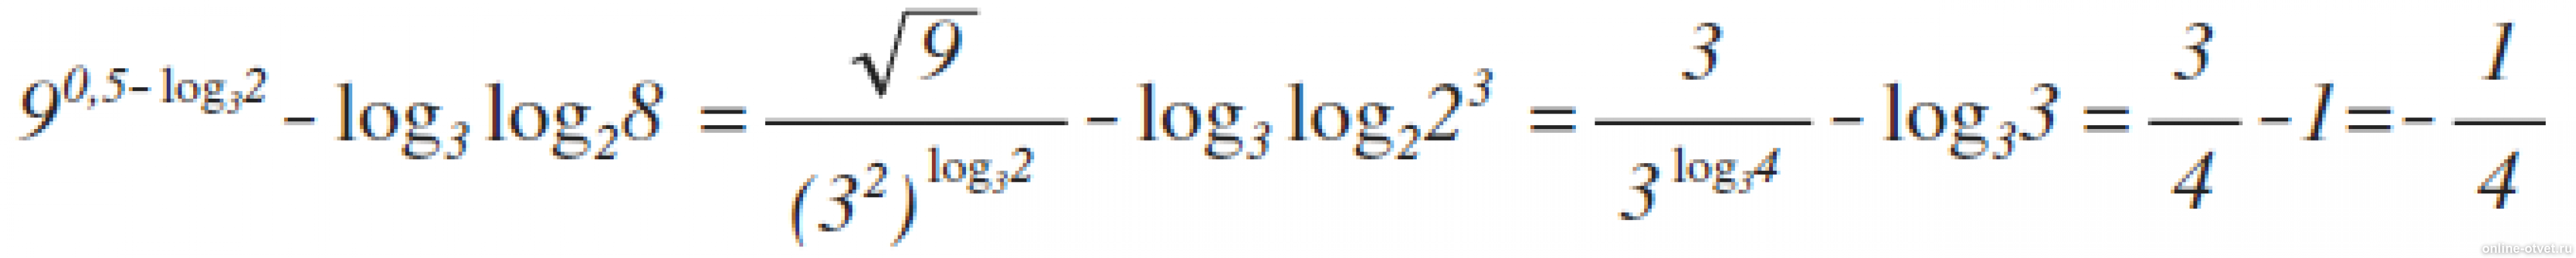 2 log 0.5 3. 9 В степени 0.5 log 3 2 log3. Лог x по основанию корень из 3. Log 25 по основанию корень из 2. Log2 log2 корень 4 степени из 2.